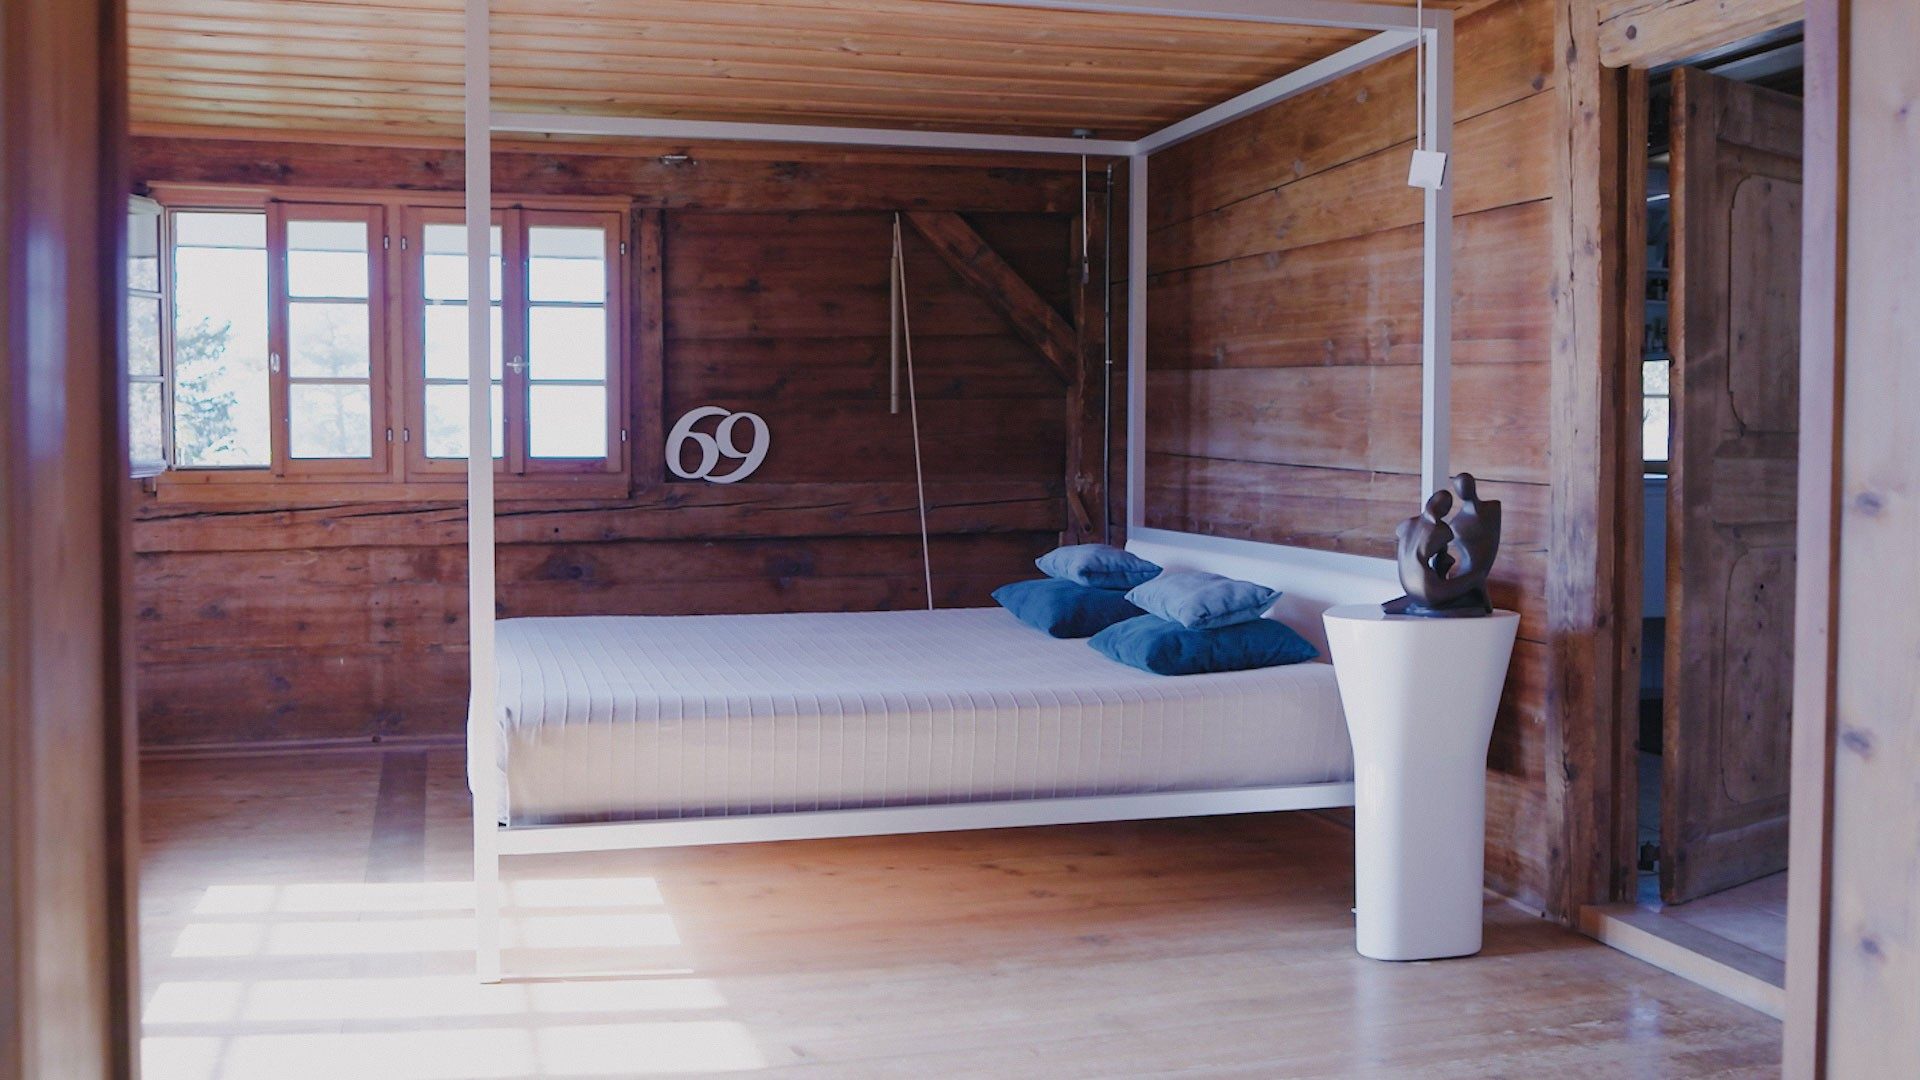 Un lit à baldaquin trône dans une chambre habillée de murs en bois.